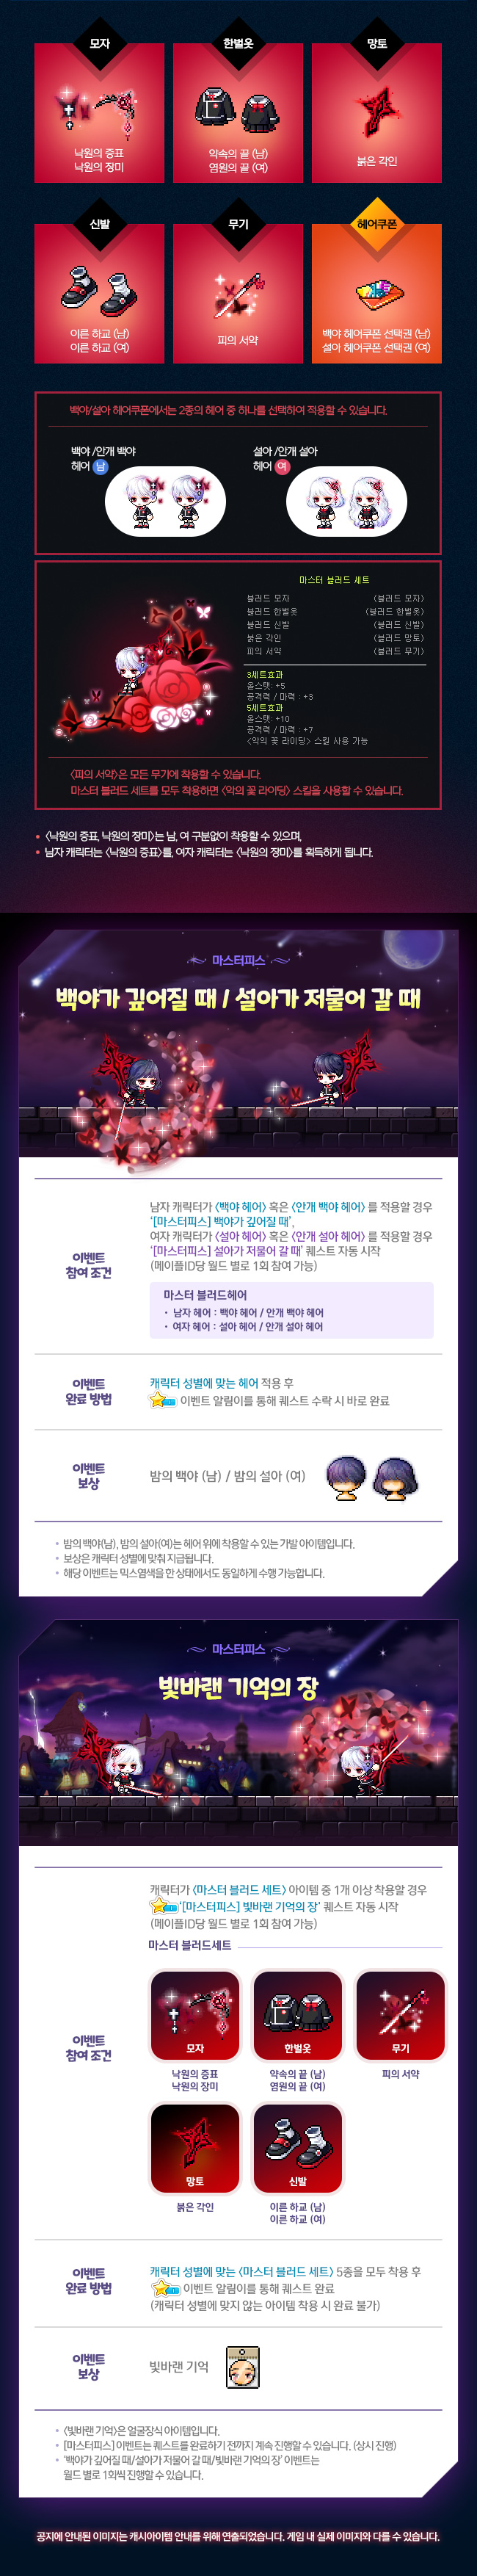 2017년 11월 30일 로얄 스타일 업데이트